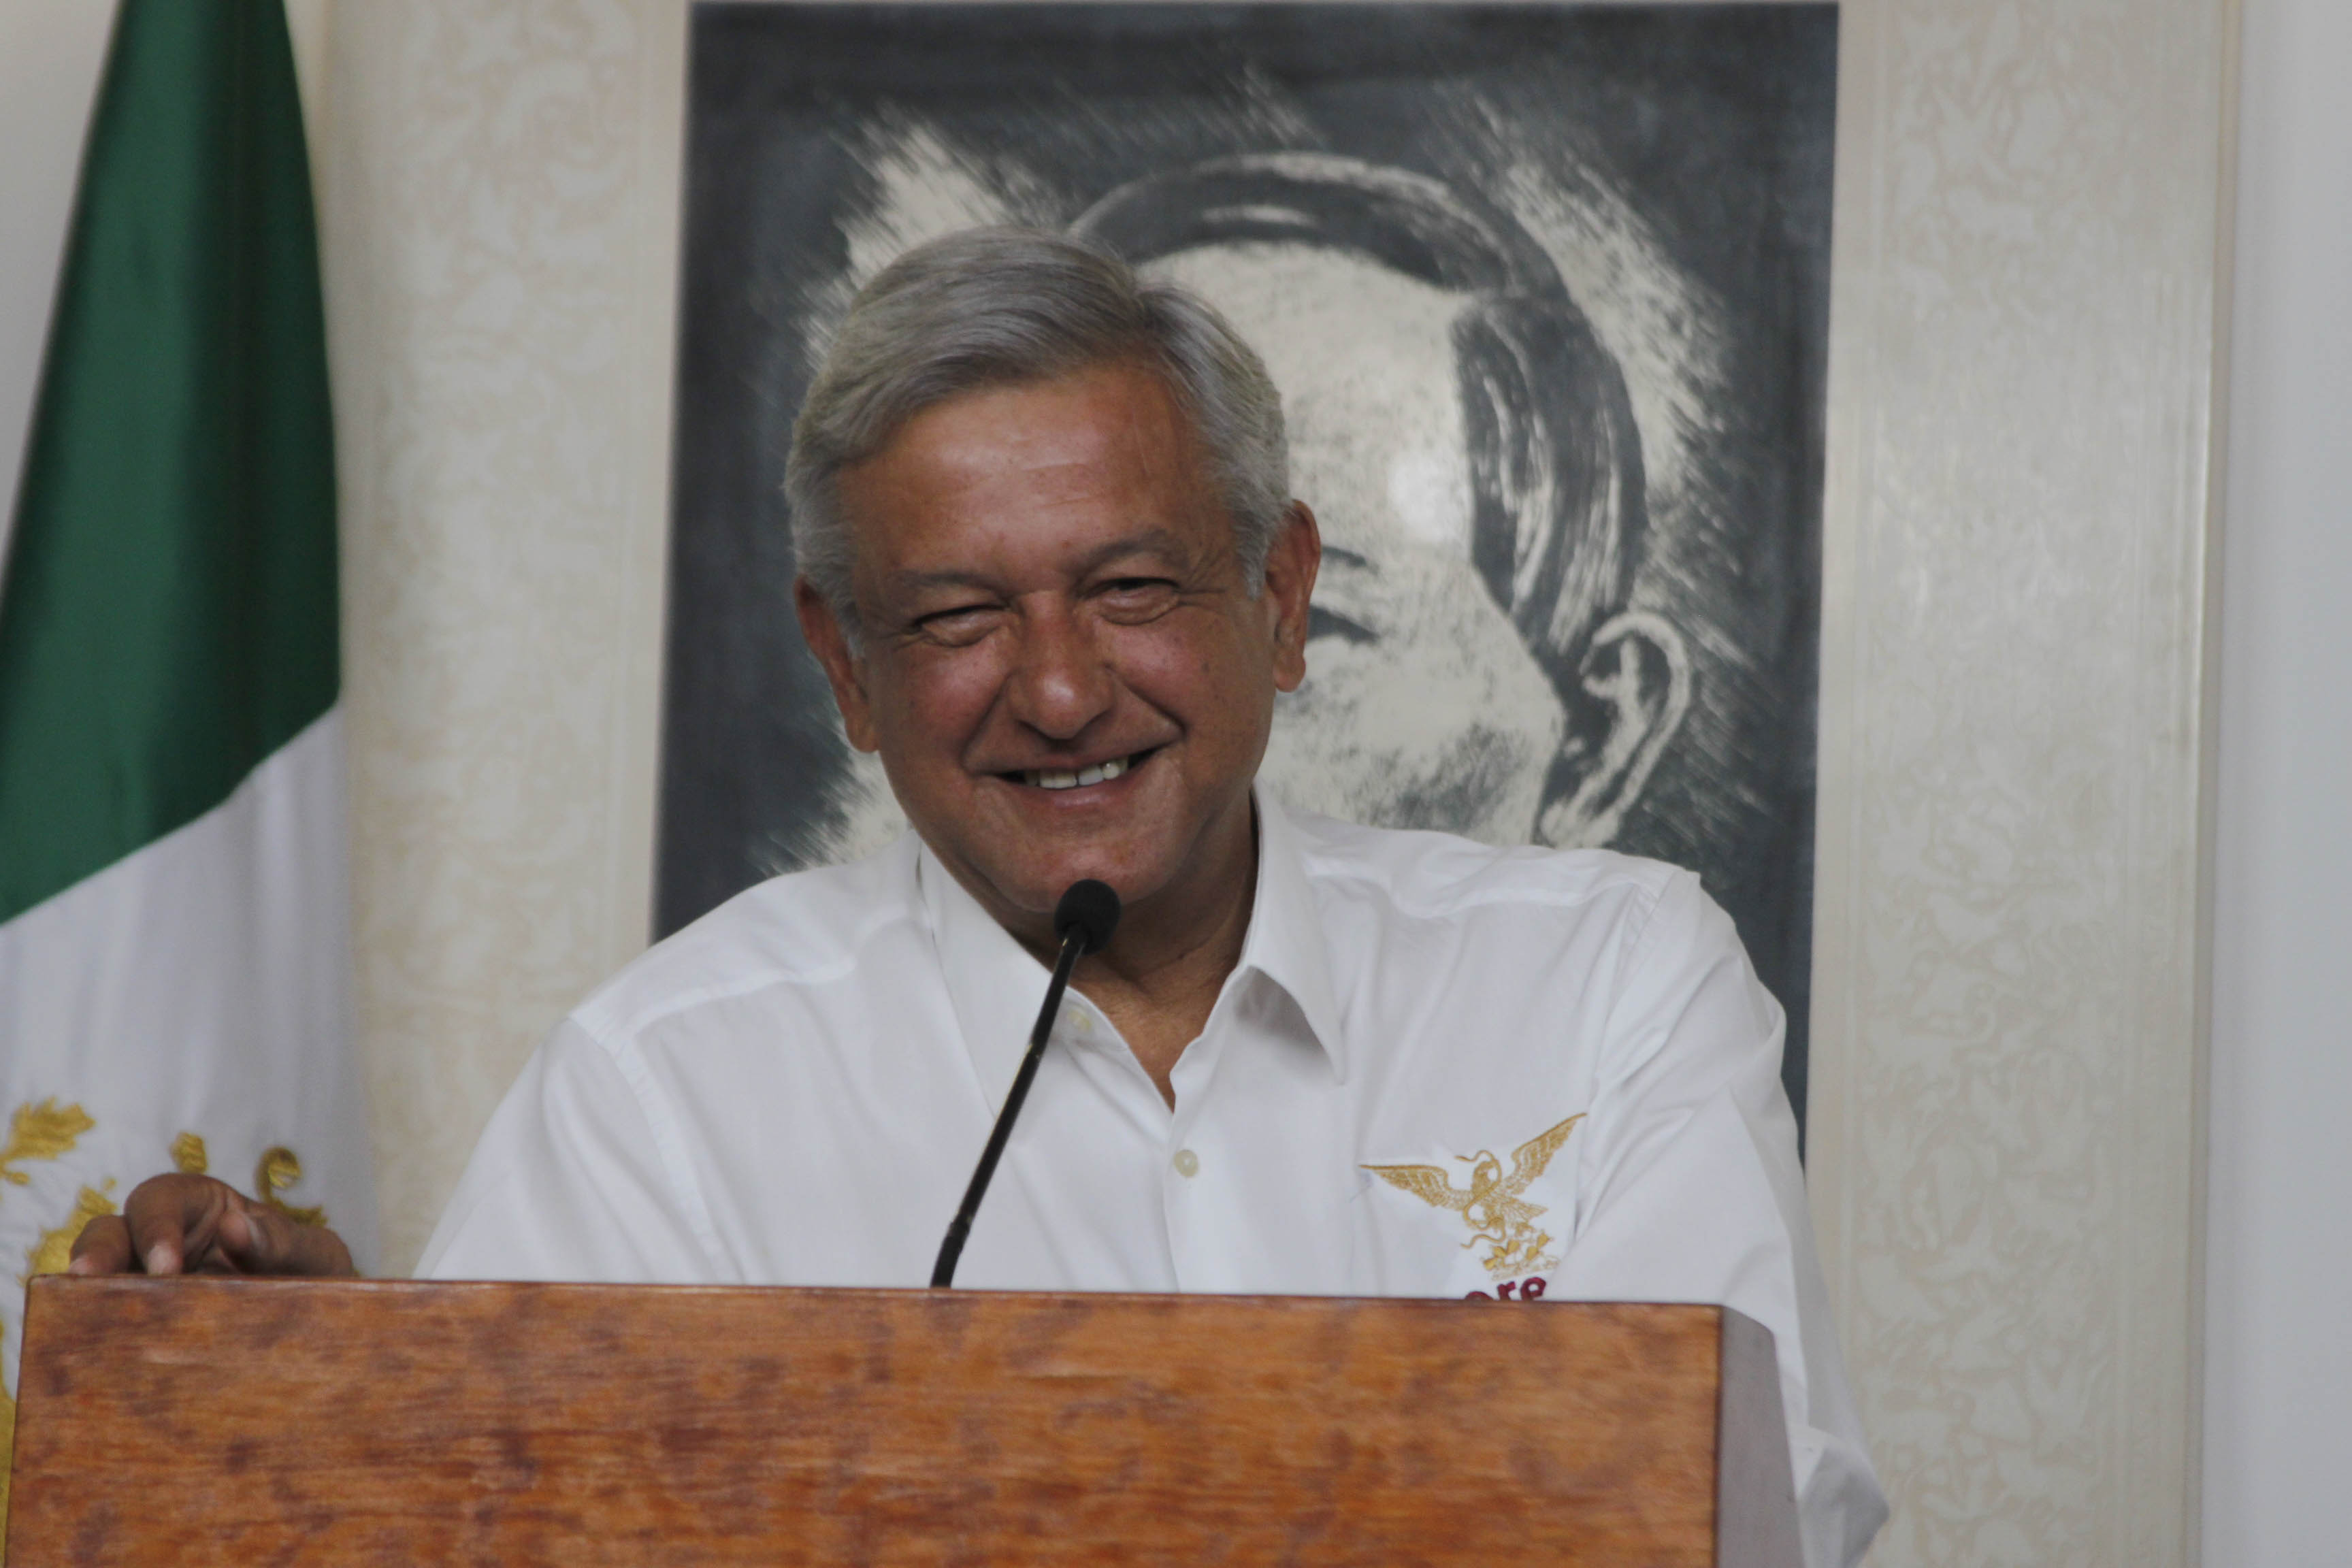 29 abril 2012, conferencia prensa AMLO, Ciudad de México 2